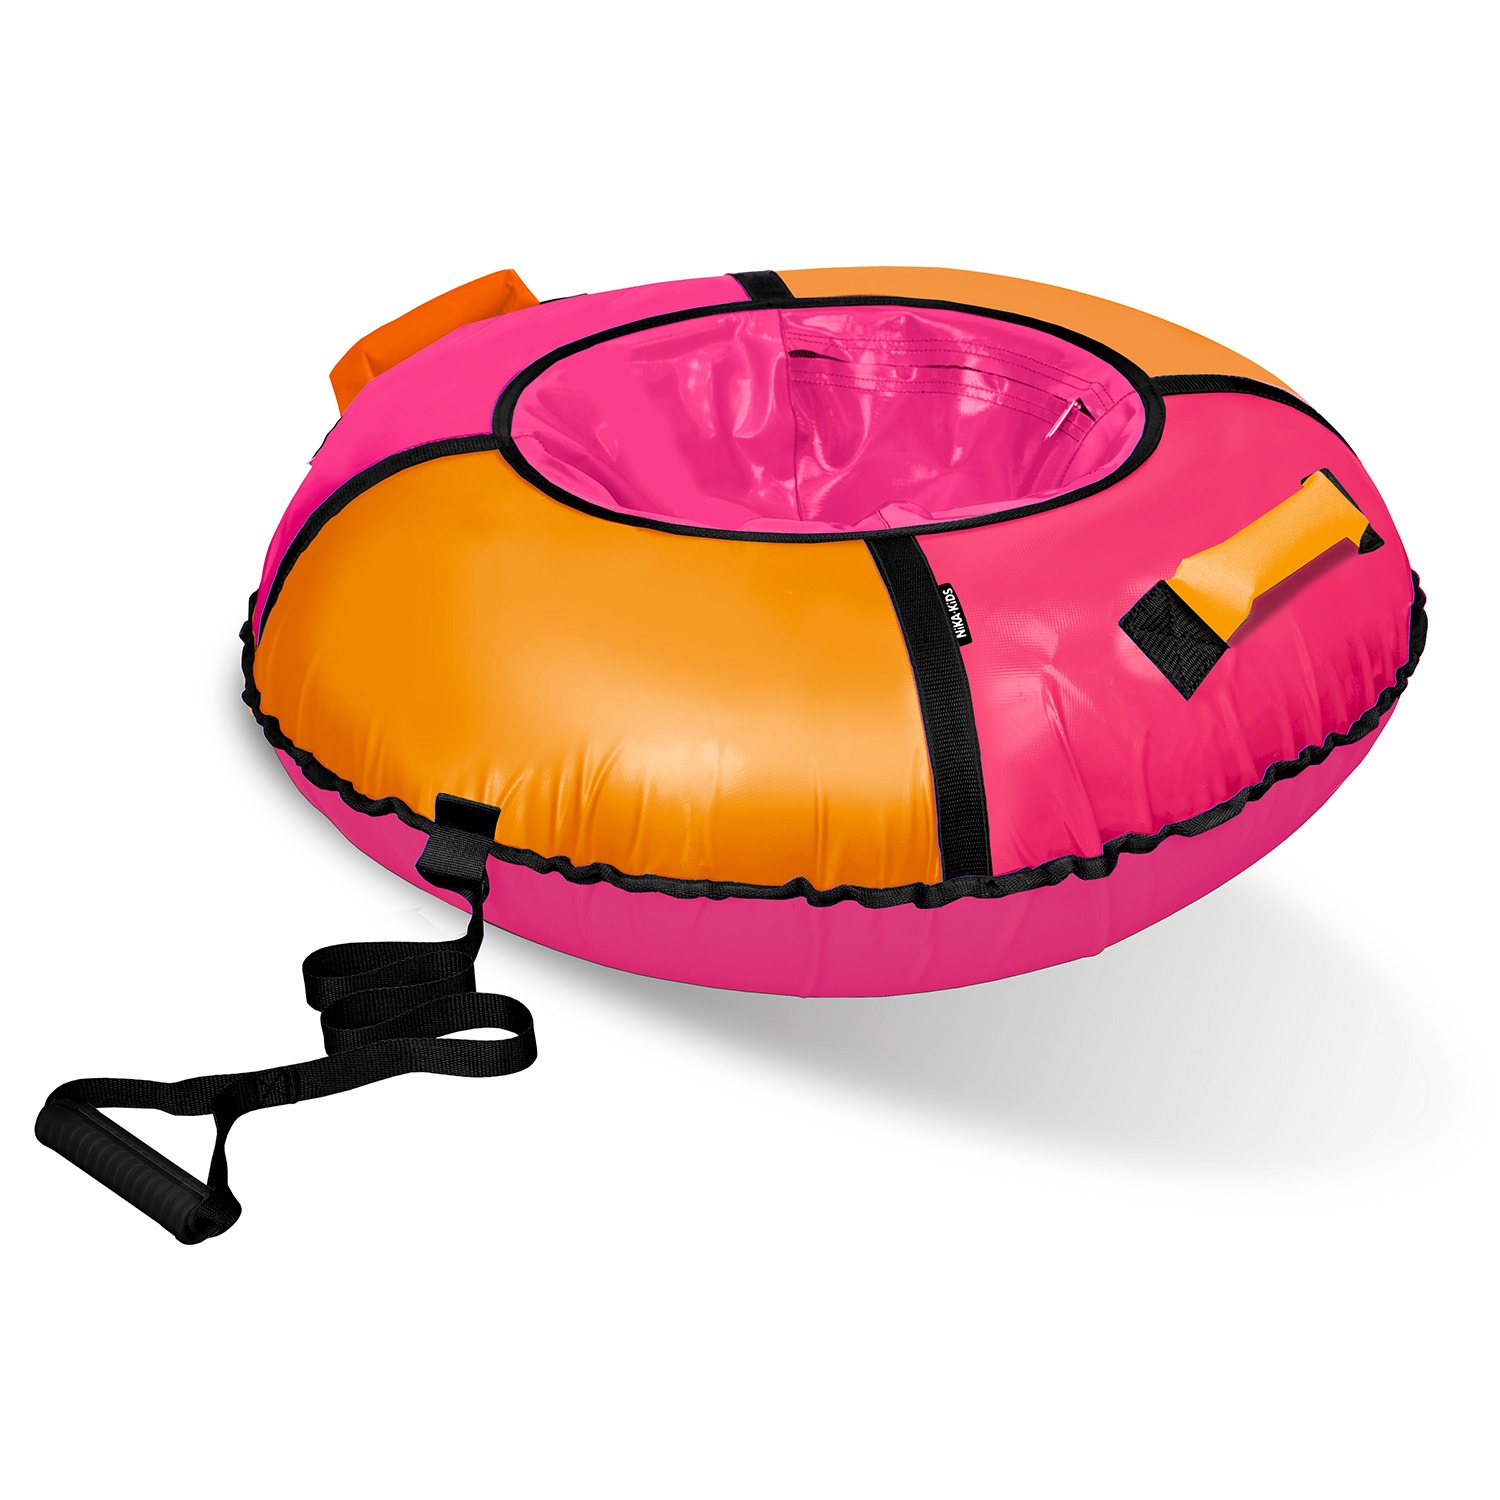 Тюбинг ватрушка Nika Классик ТБ1К-85/РО розовый/оранжевый тарелка круглая wilmax spiral d 25 5 см оранжевый